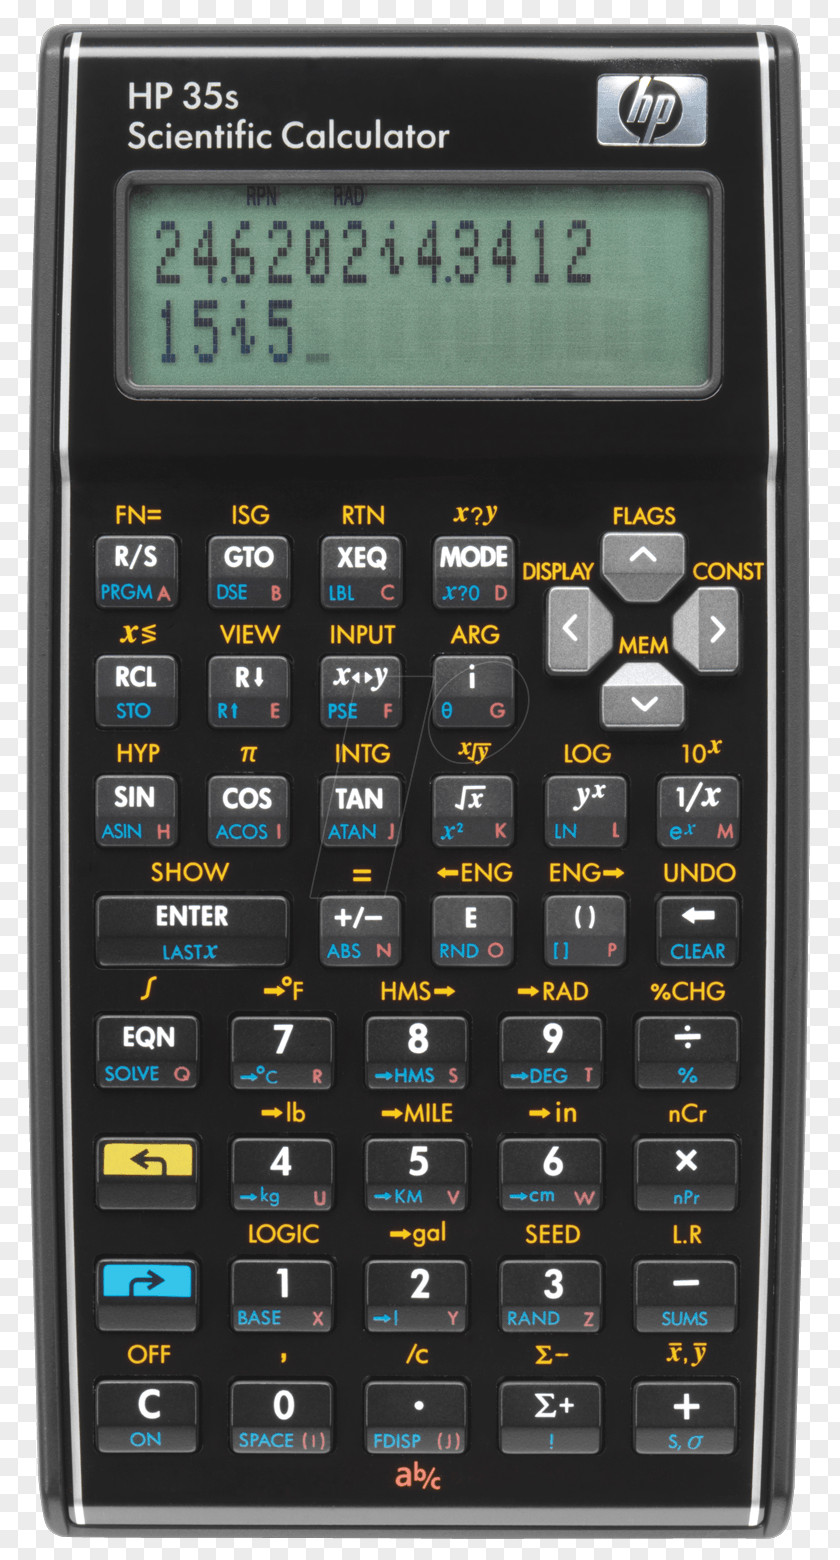 Scientific Calculator Hewlett-Packard HP 35s HP-35 Calculators Programmable PNG